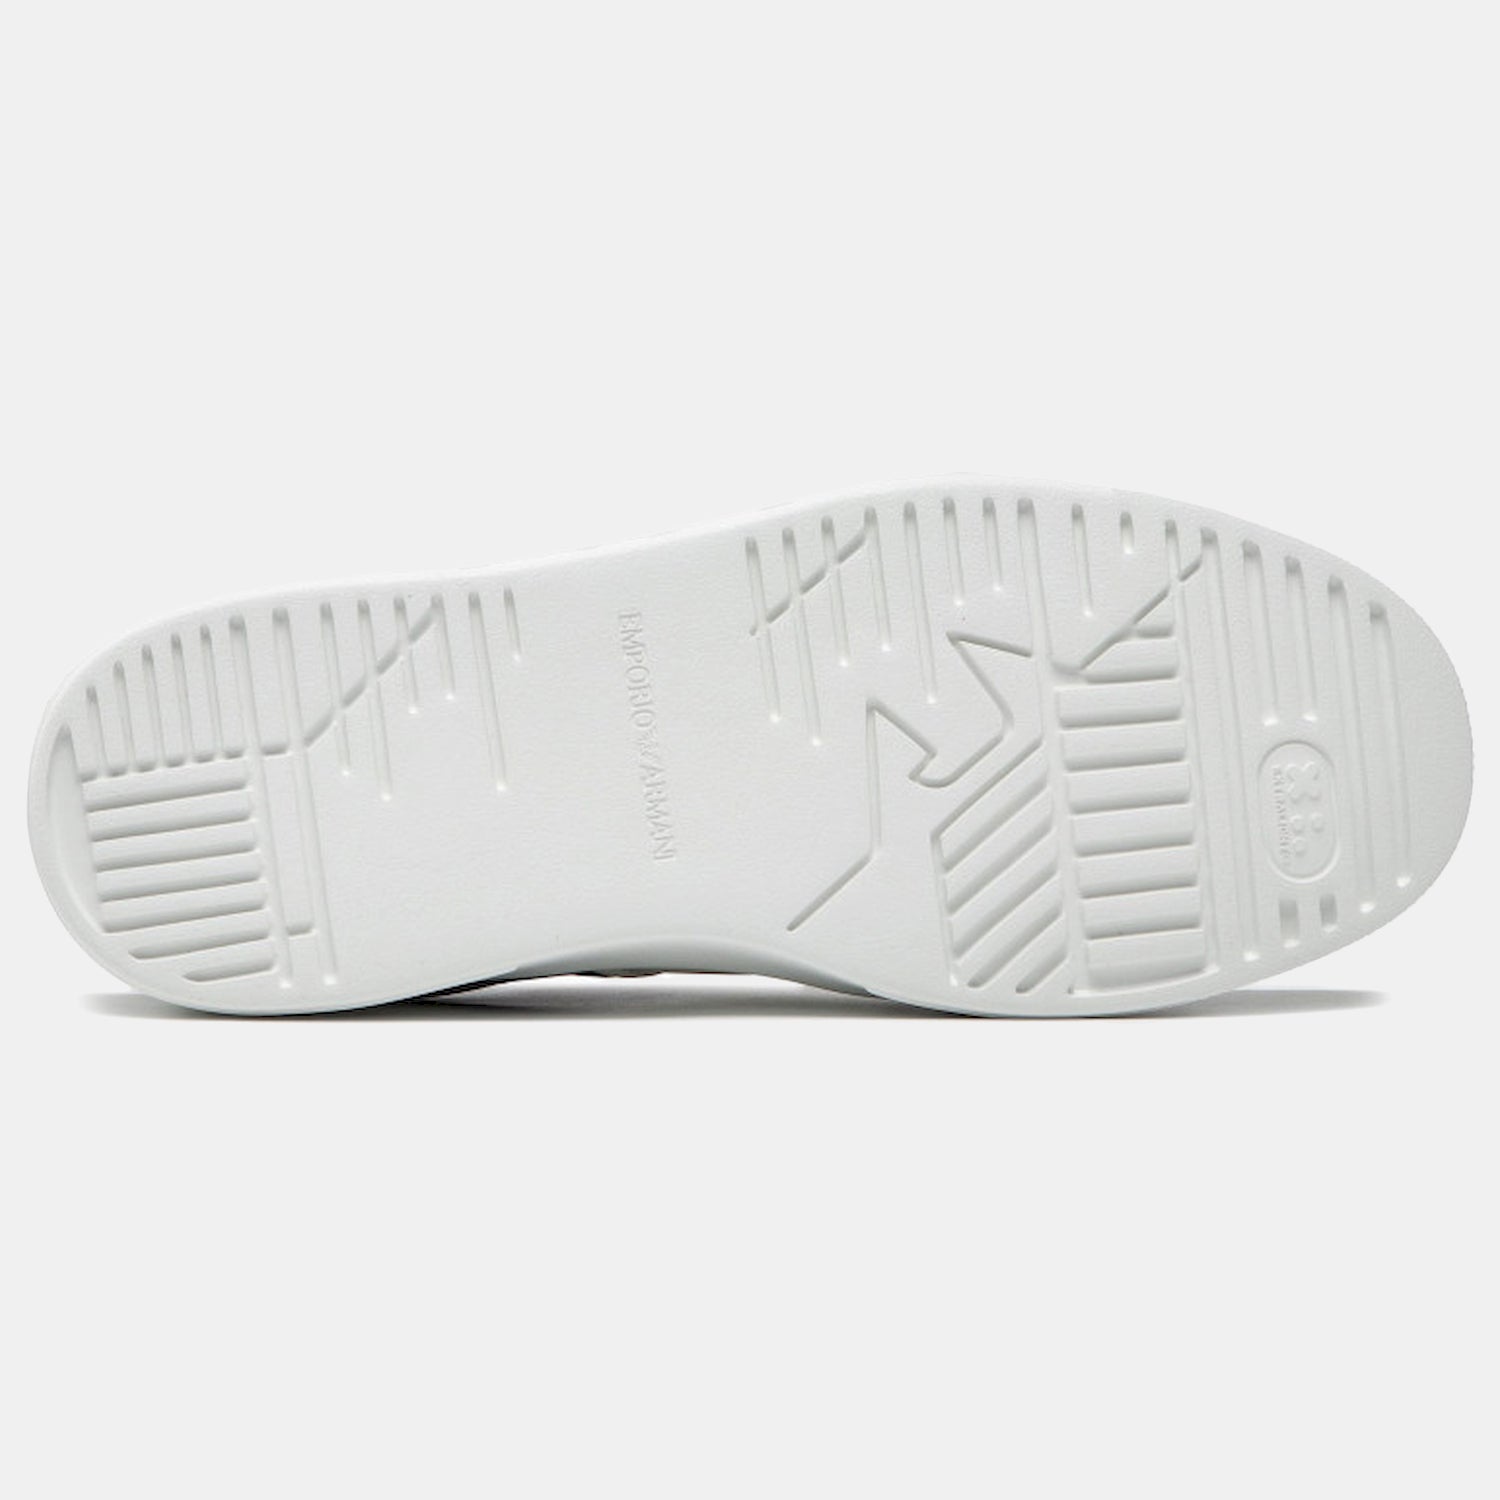 Armani Sapatilhas Sneakers Shoes X4x570 Xn010 Blk White Preto Branco_shot4